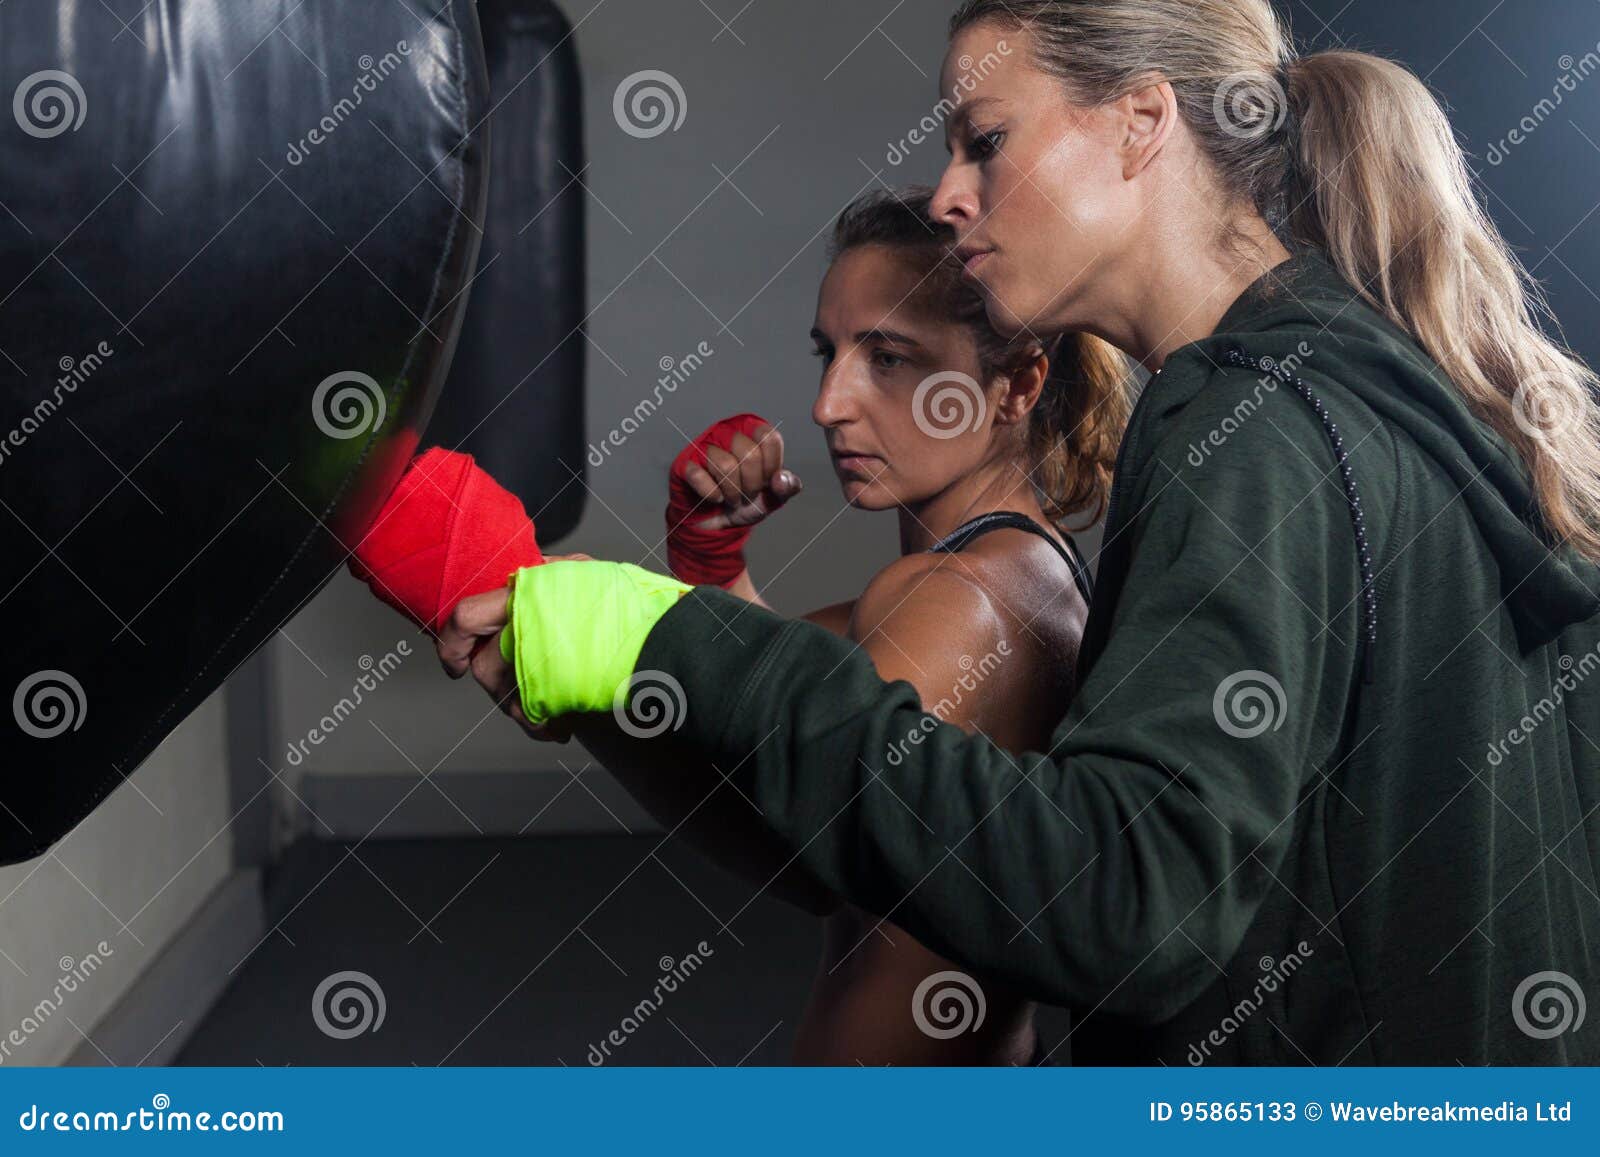 Женщина тренер по боксу. Женщина боксер тренер. Бокс тренер-женщина Вильчинская.